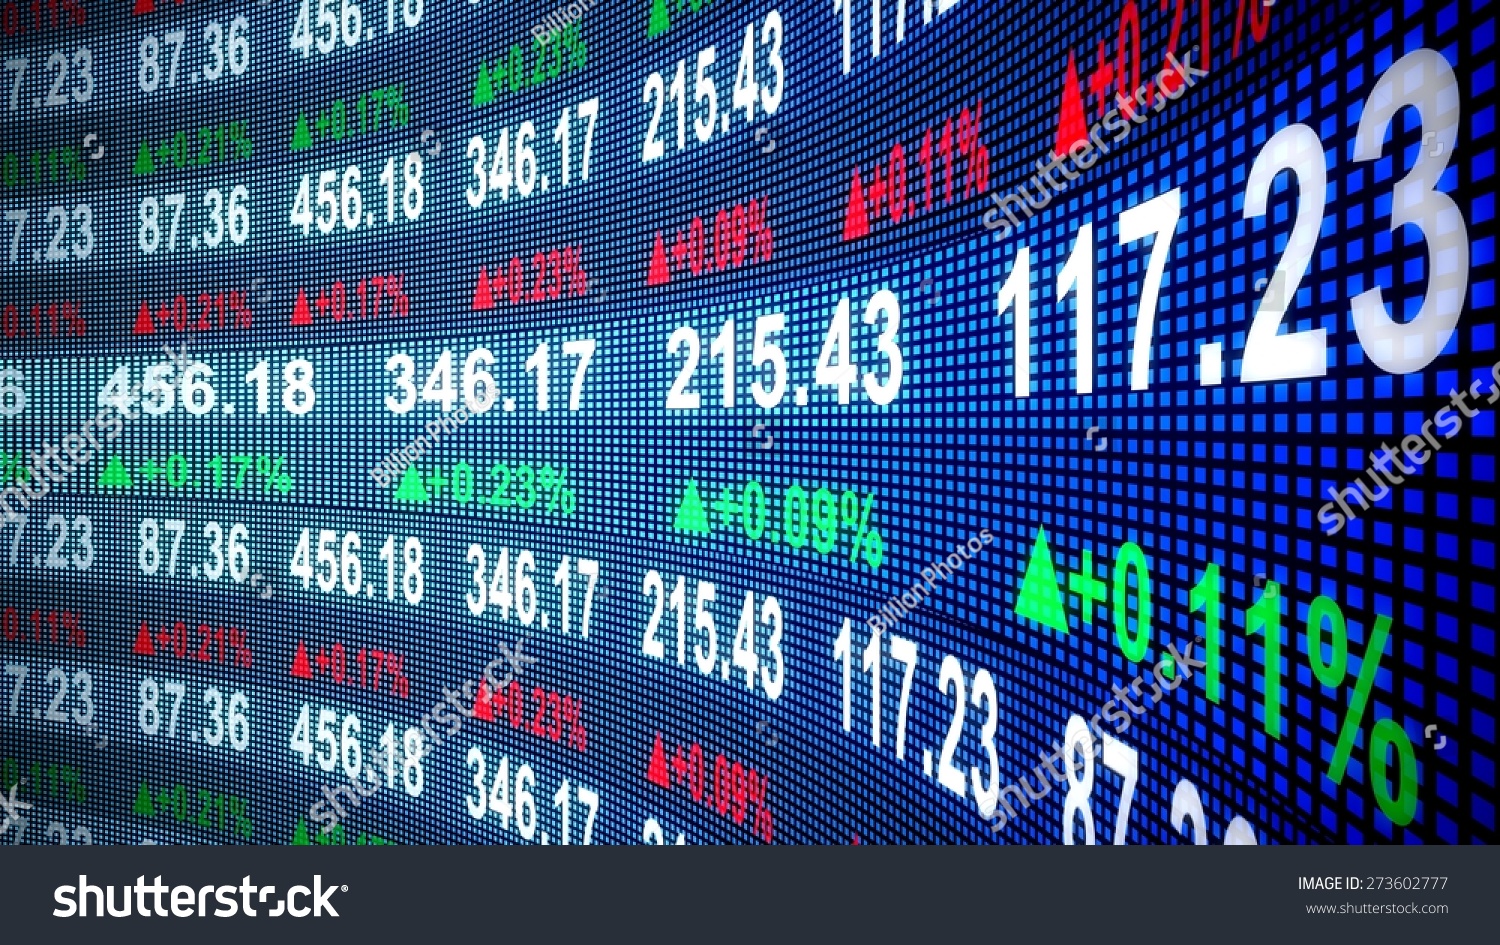 Stock exchange and securities market